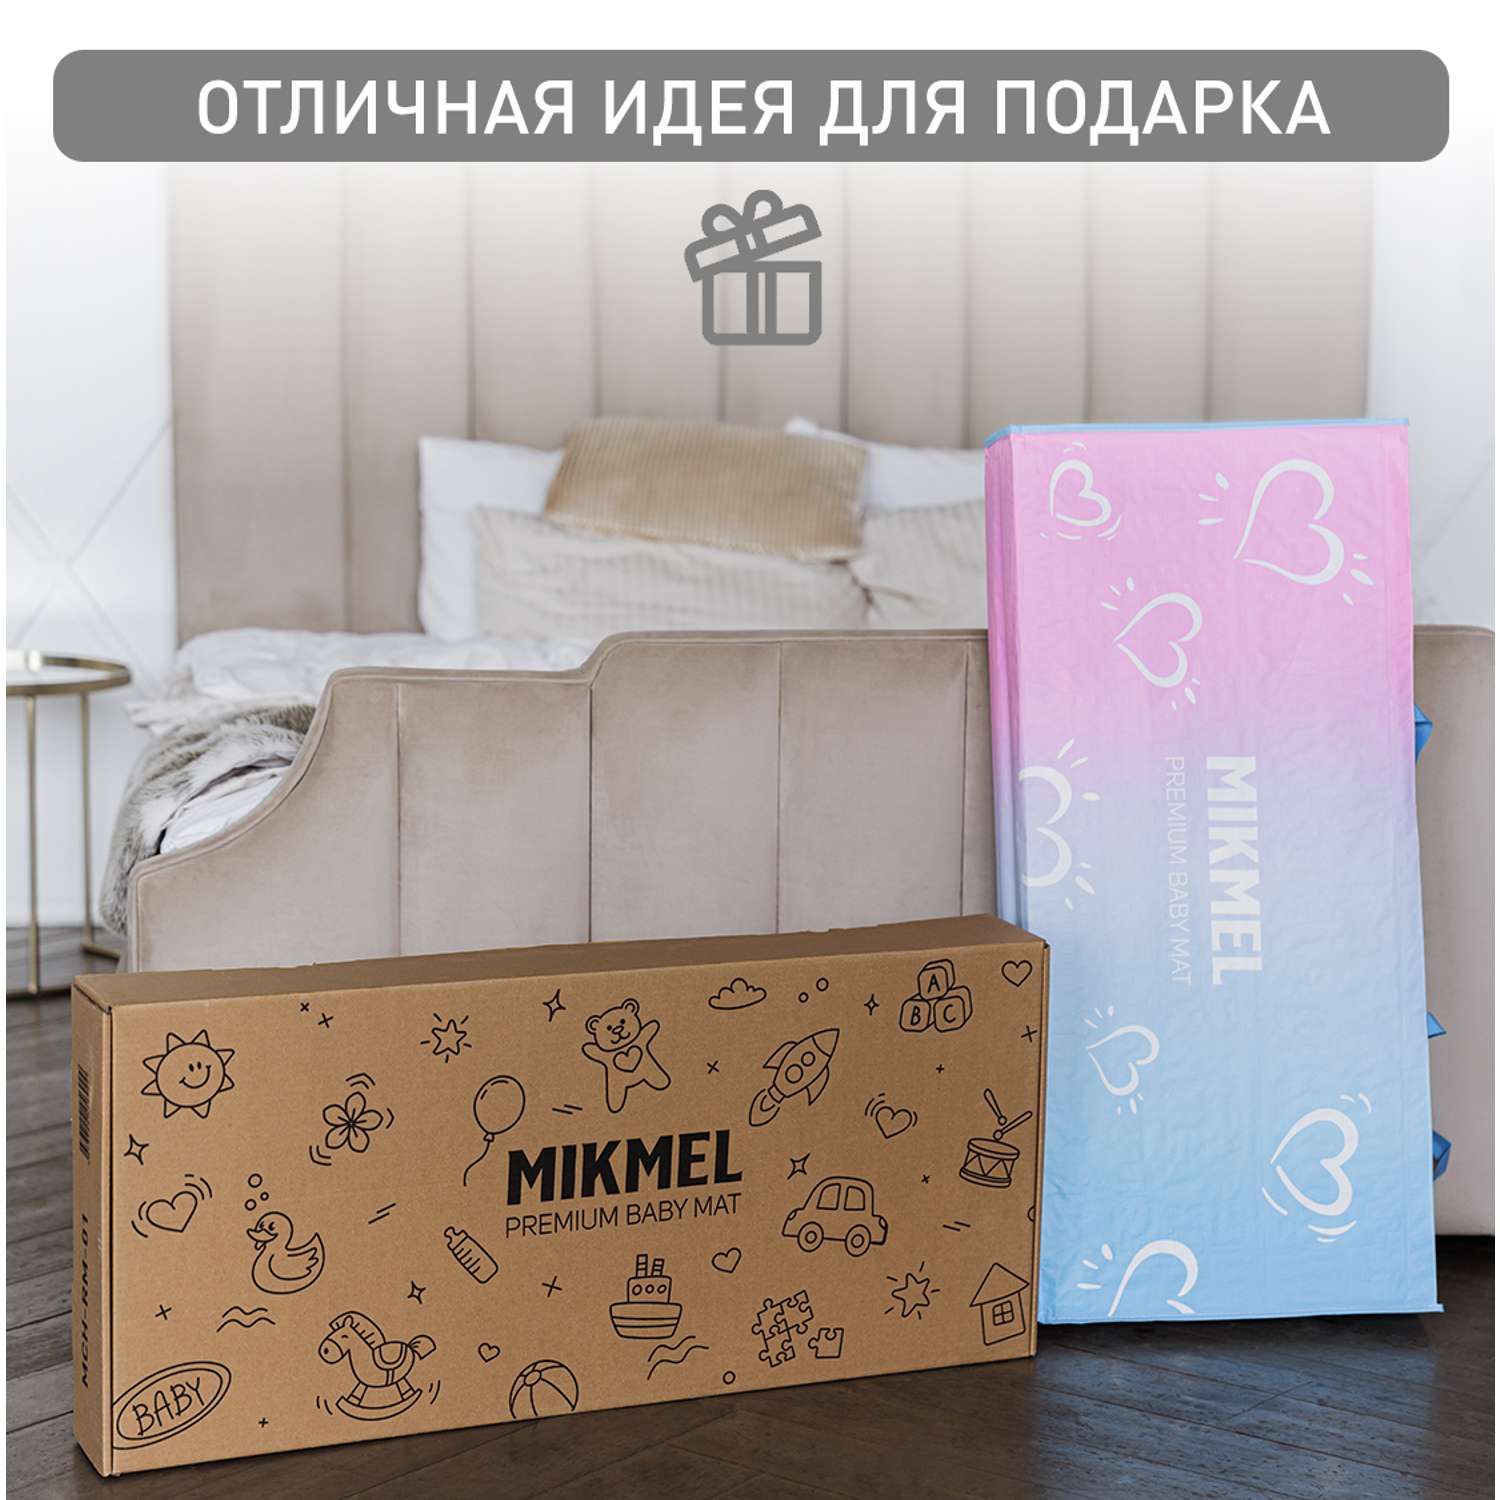 Детский коврик MIKMEL Premium складной игровой развивающий двусторонний для ползания 180х200 см Сафари Геометрия - фото 10